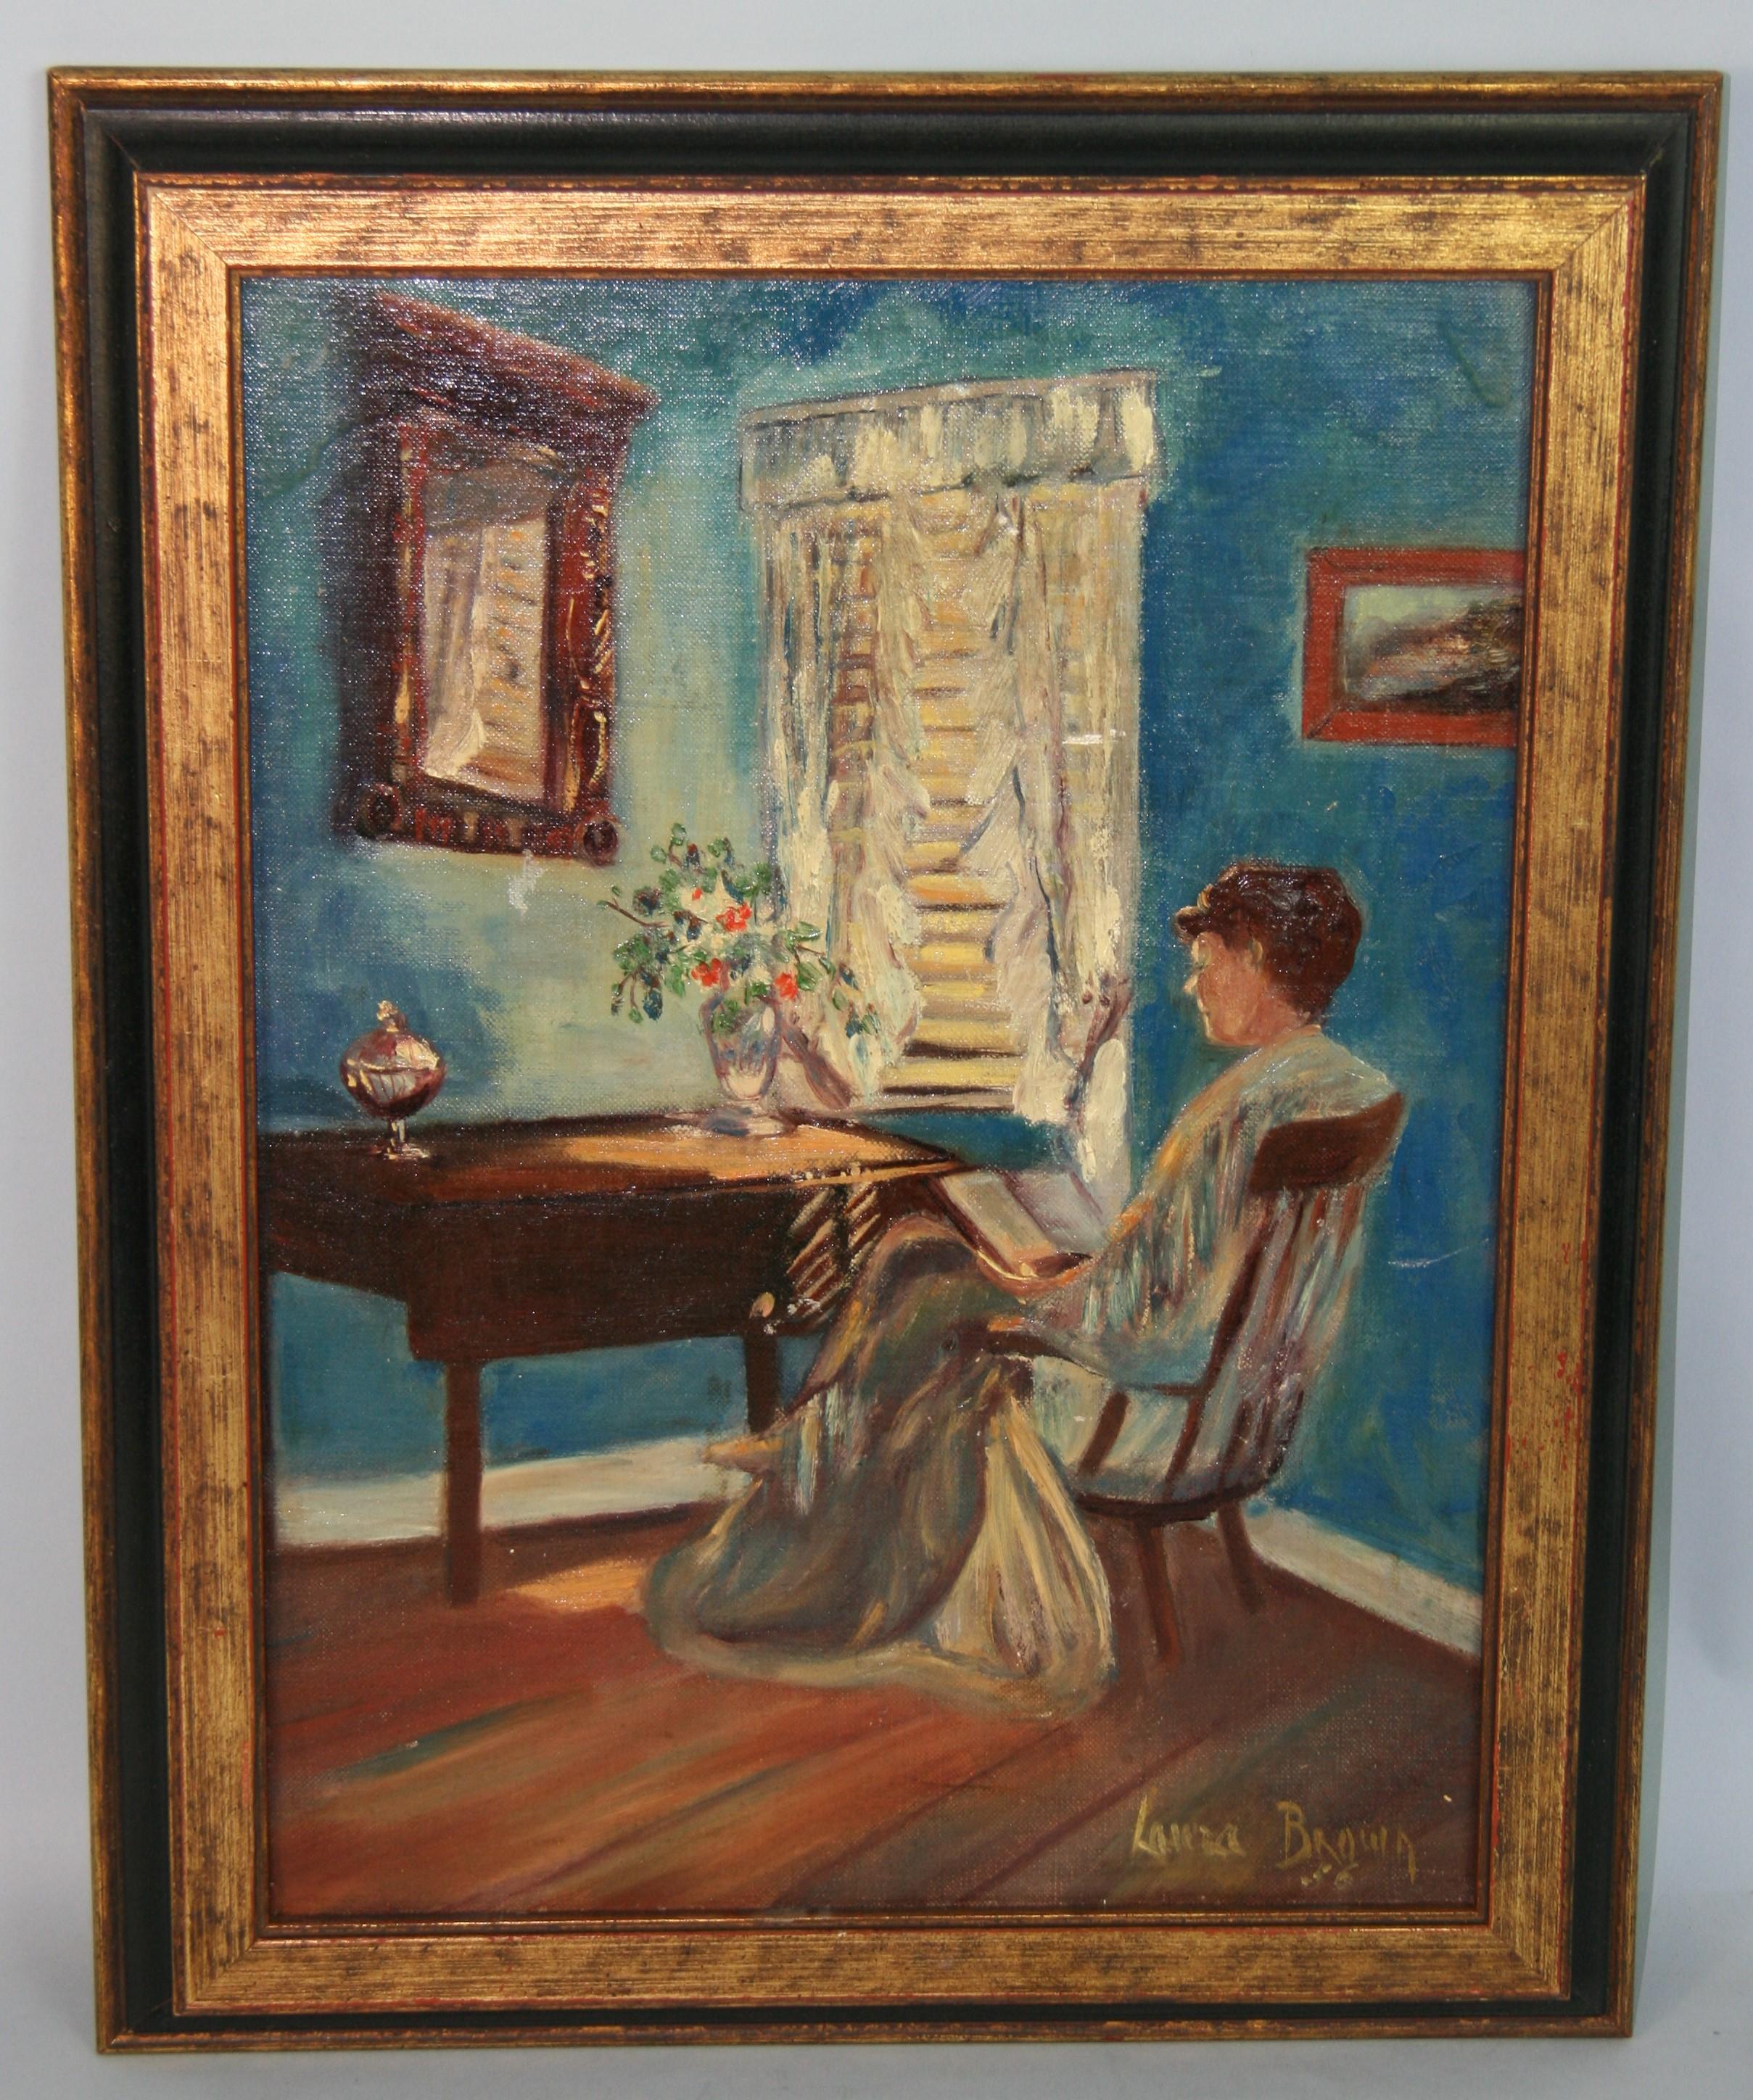 Antike amerikanische impressionistische Interieurszene, Frau beim Lesen durch das Fenster, 1956 – Painting von Unknown